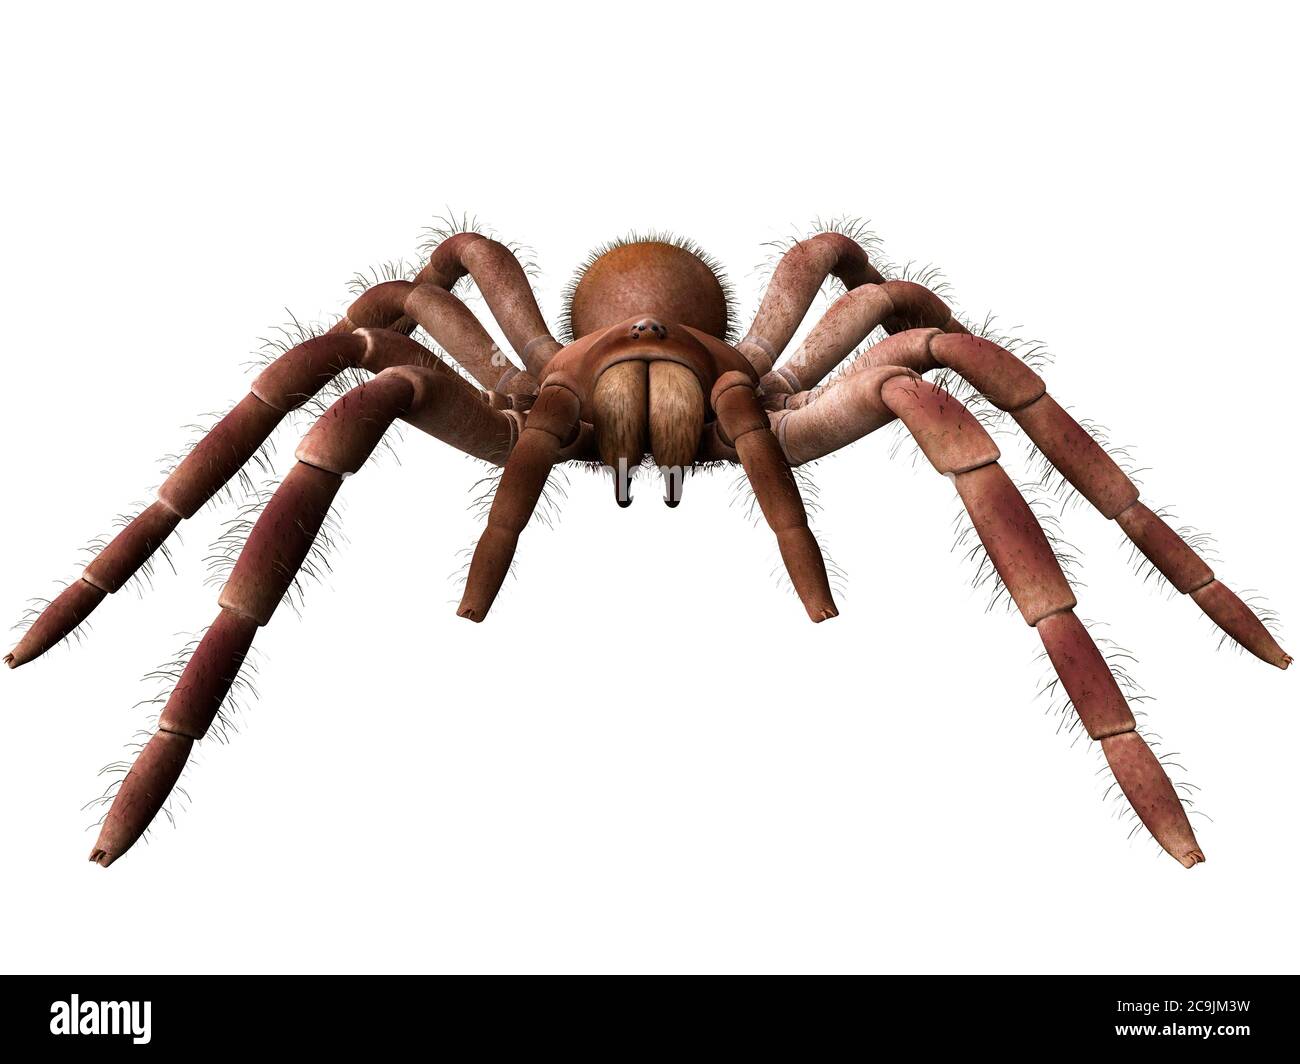 Goliath birdeater tarantula (Theraphosa blondi), computer illustration. Stock Photo